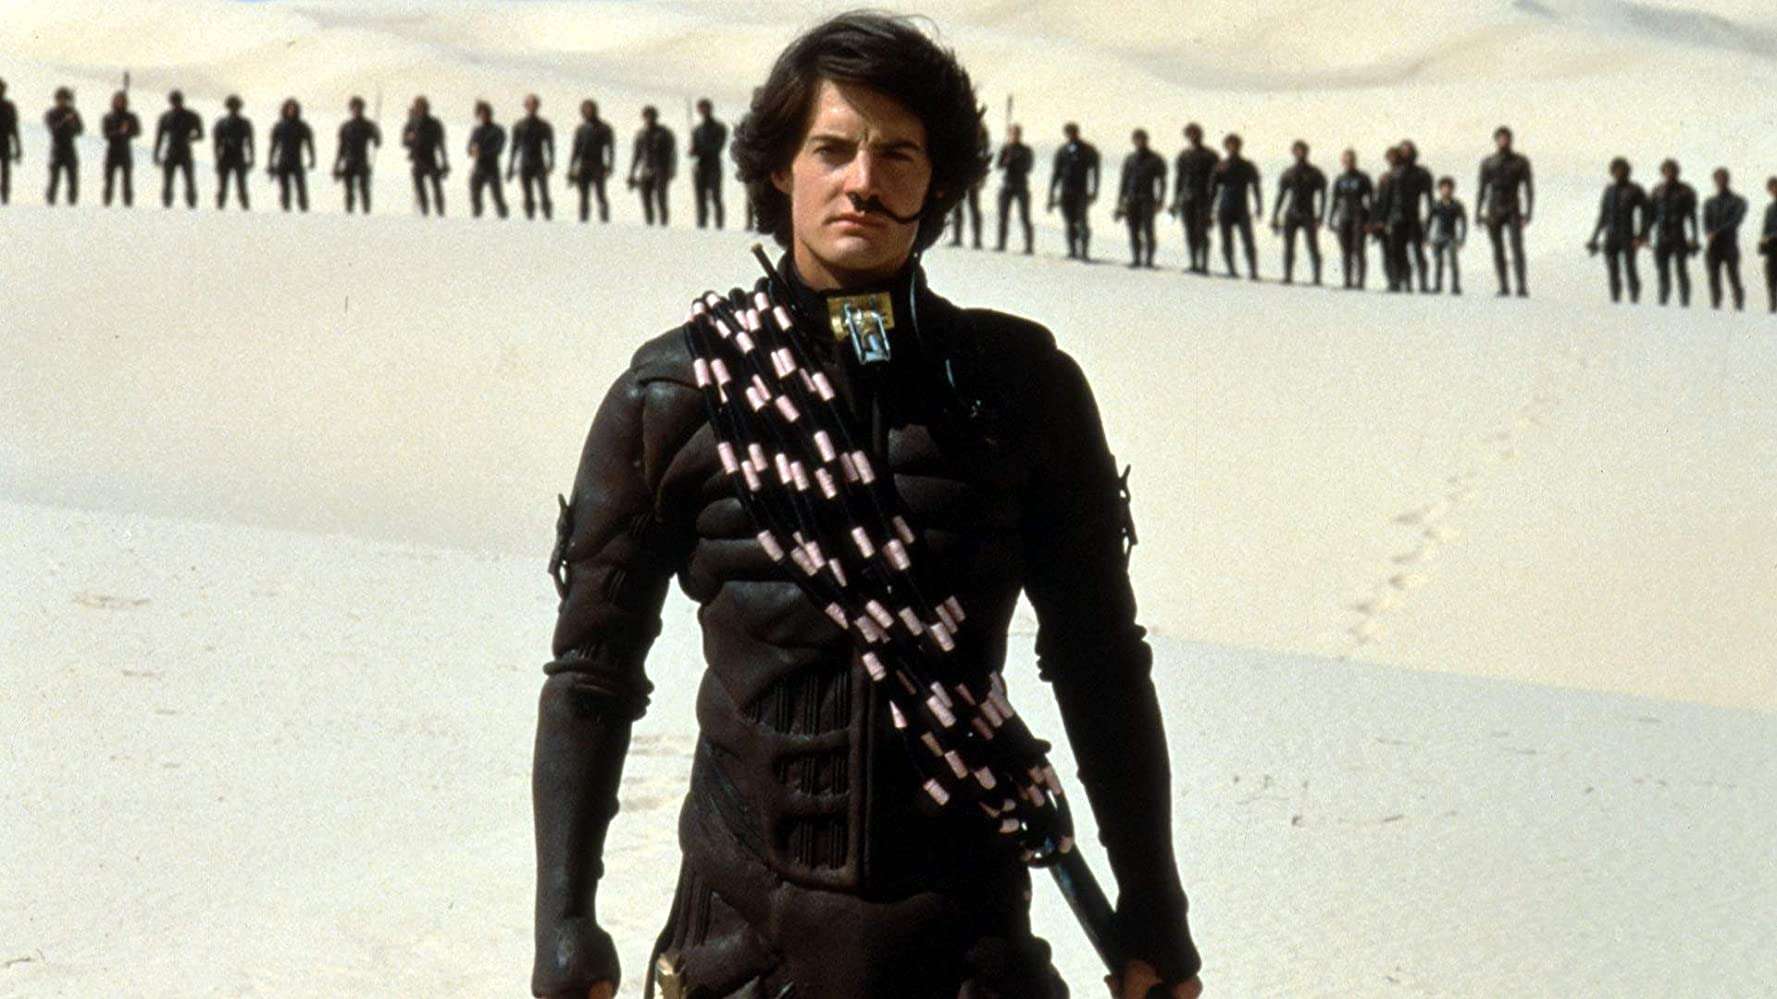 Dune-1984